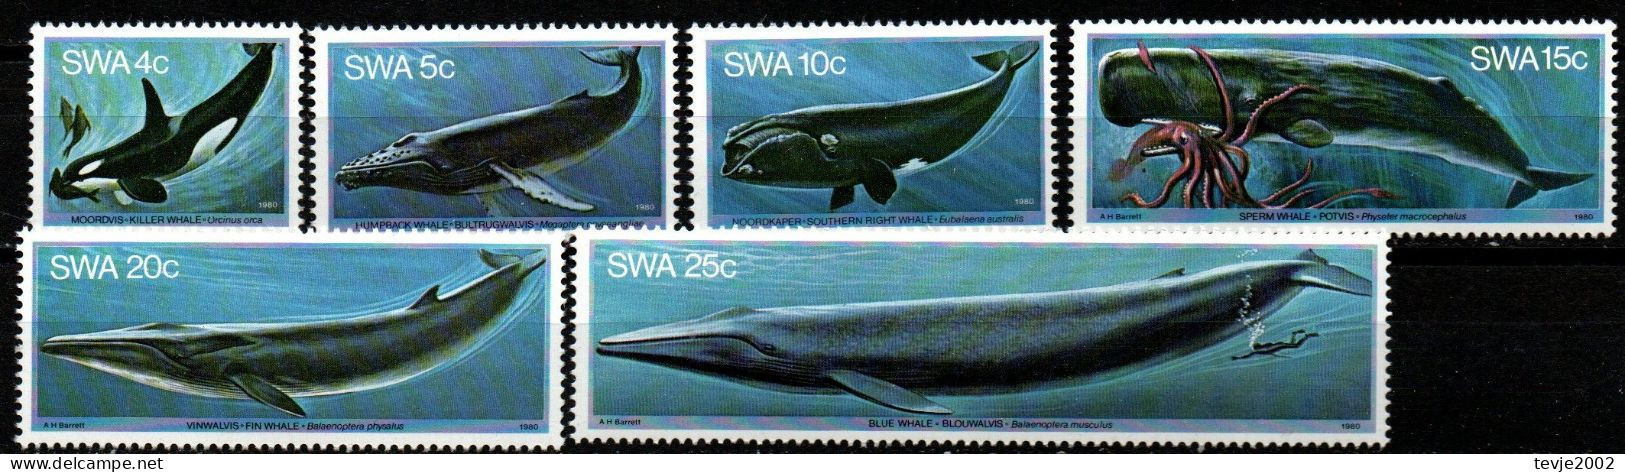 Südwestafrika 1980 - Mi.Nr. 466 - 471 - Postfrisch MNH - Tiere Animals Wale Whales - Balene